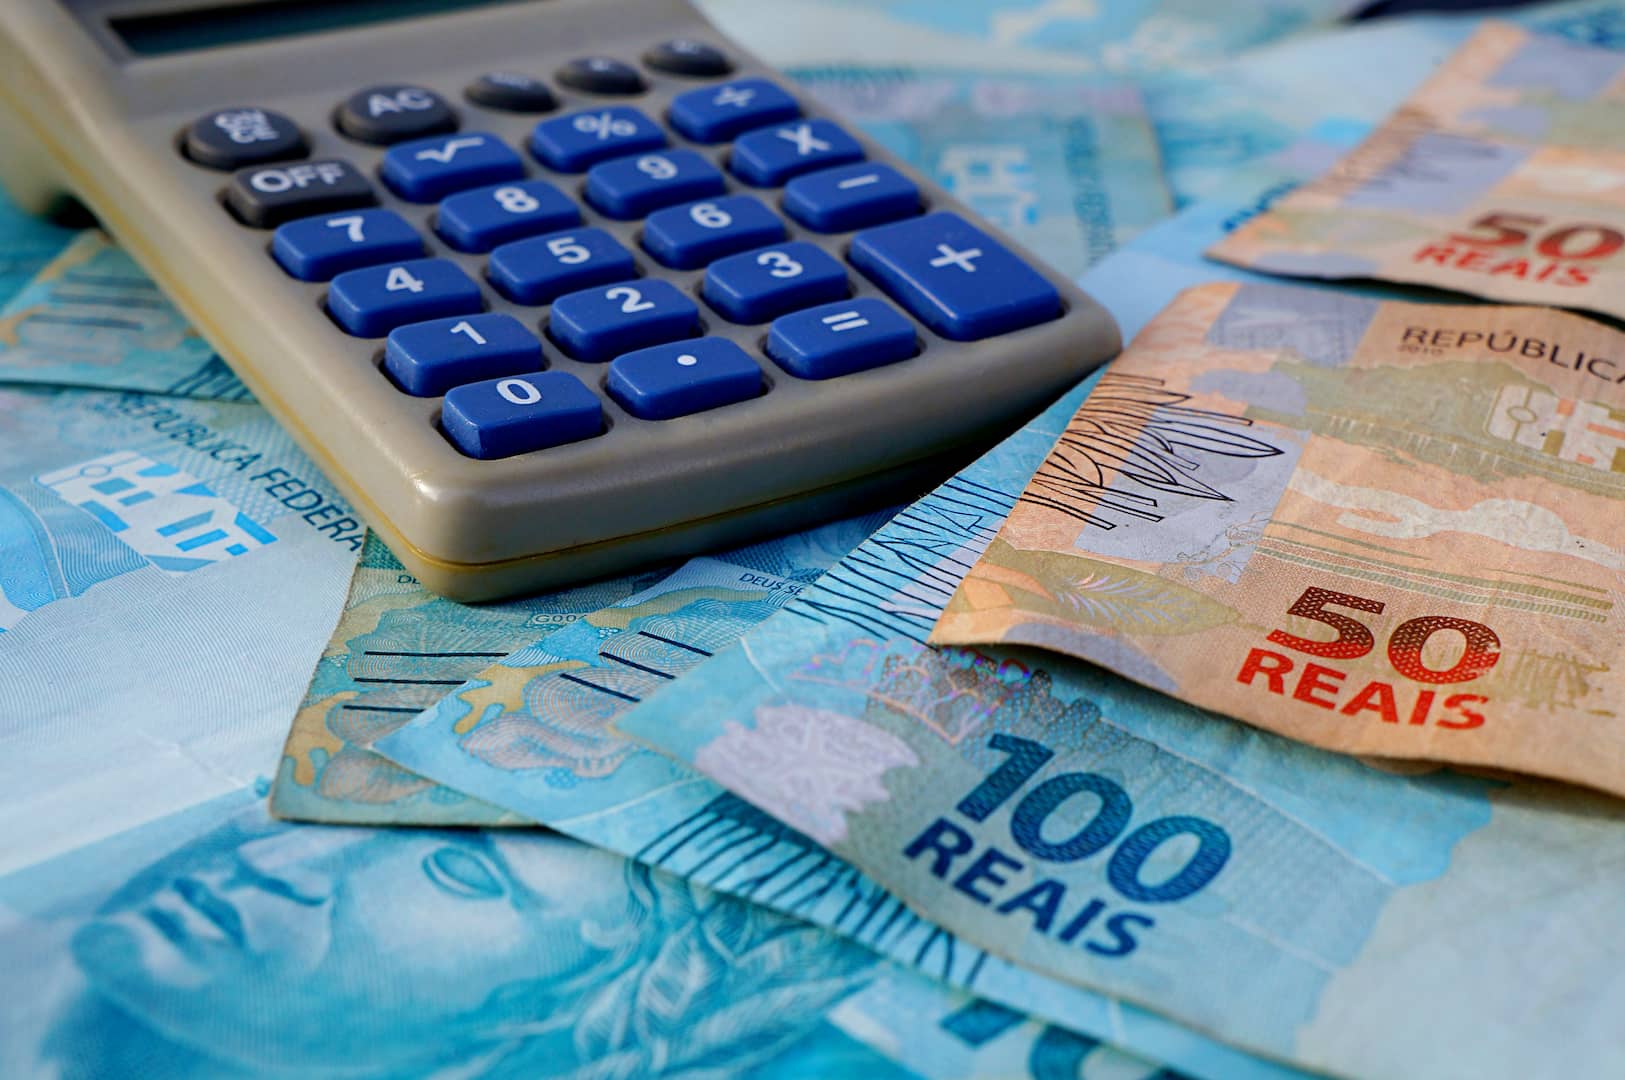 A imagem mostra uma calculadora cinza com botões azuis em cima de notas de R$50 e R$100. (Foto: Shutterstock / Brenda Rocha)